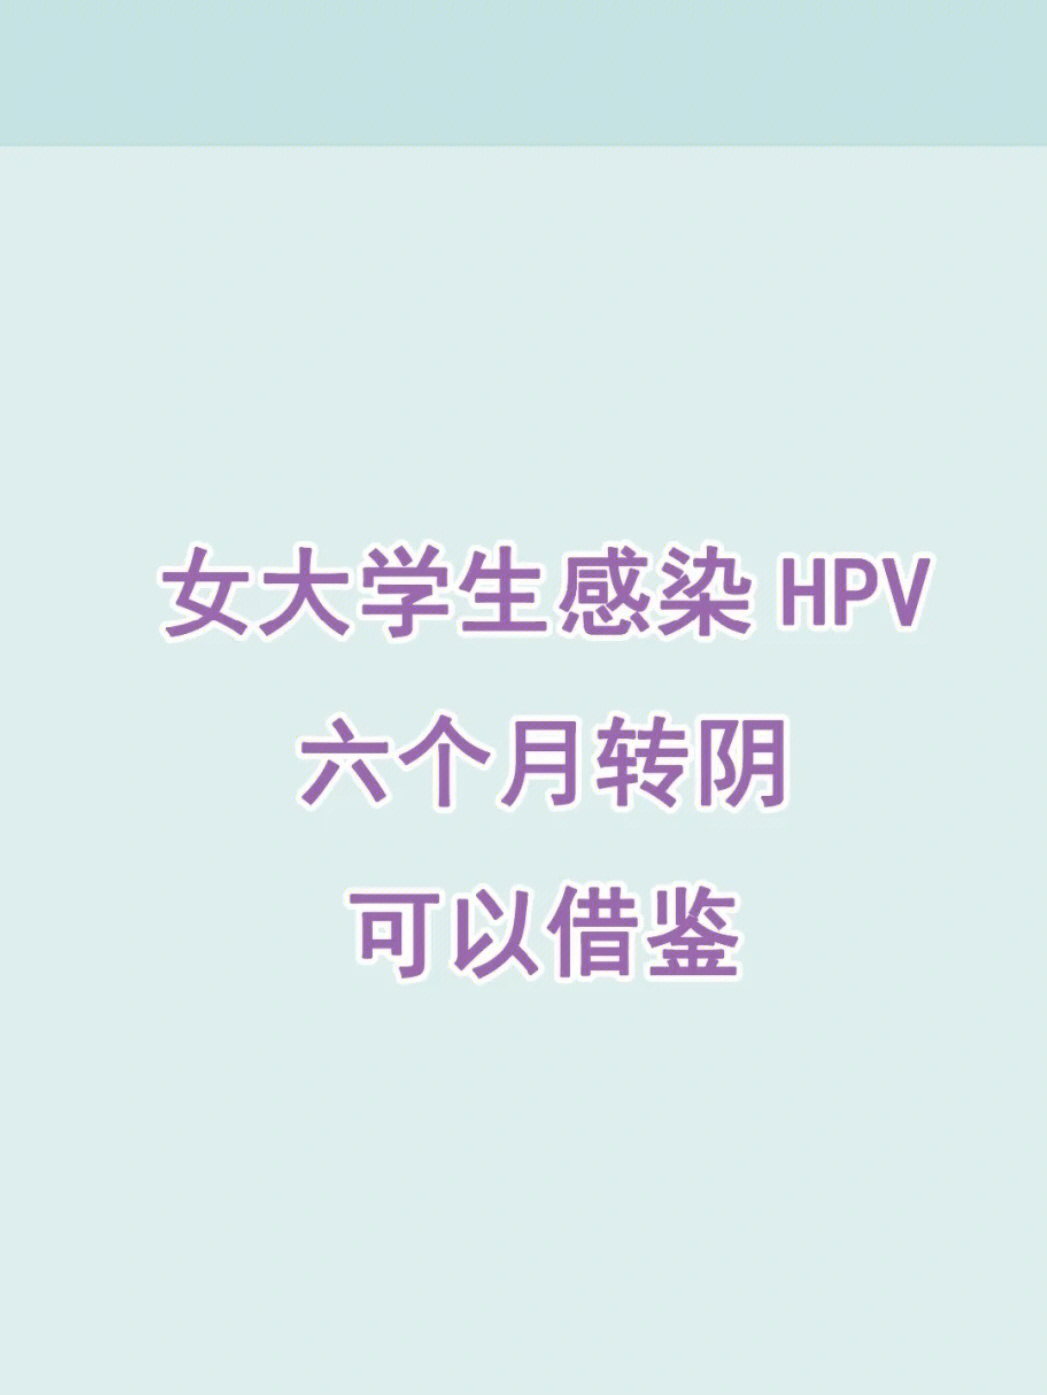 重庆九价女大学生感染hpv转阴借鉴方法